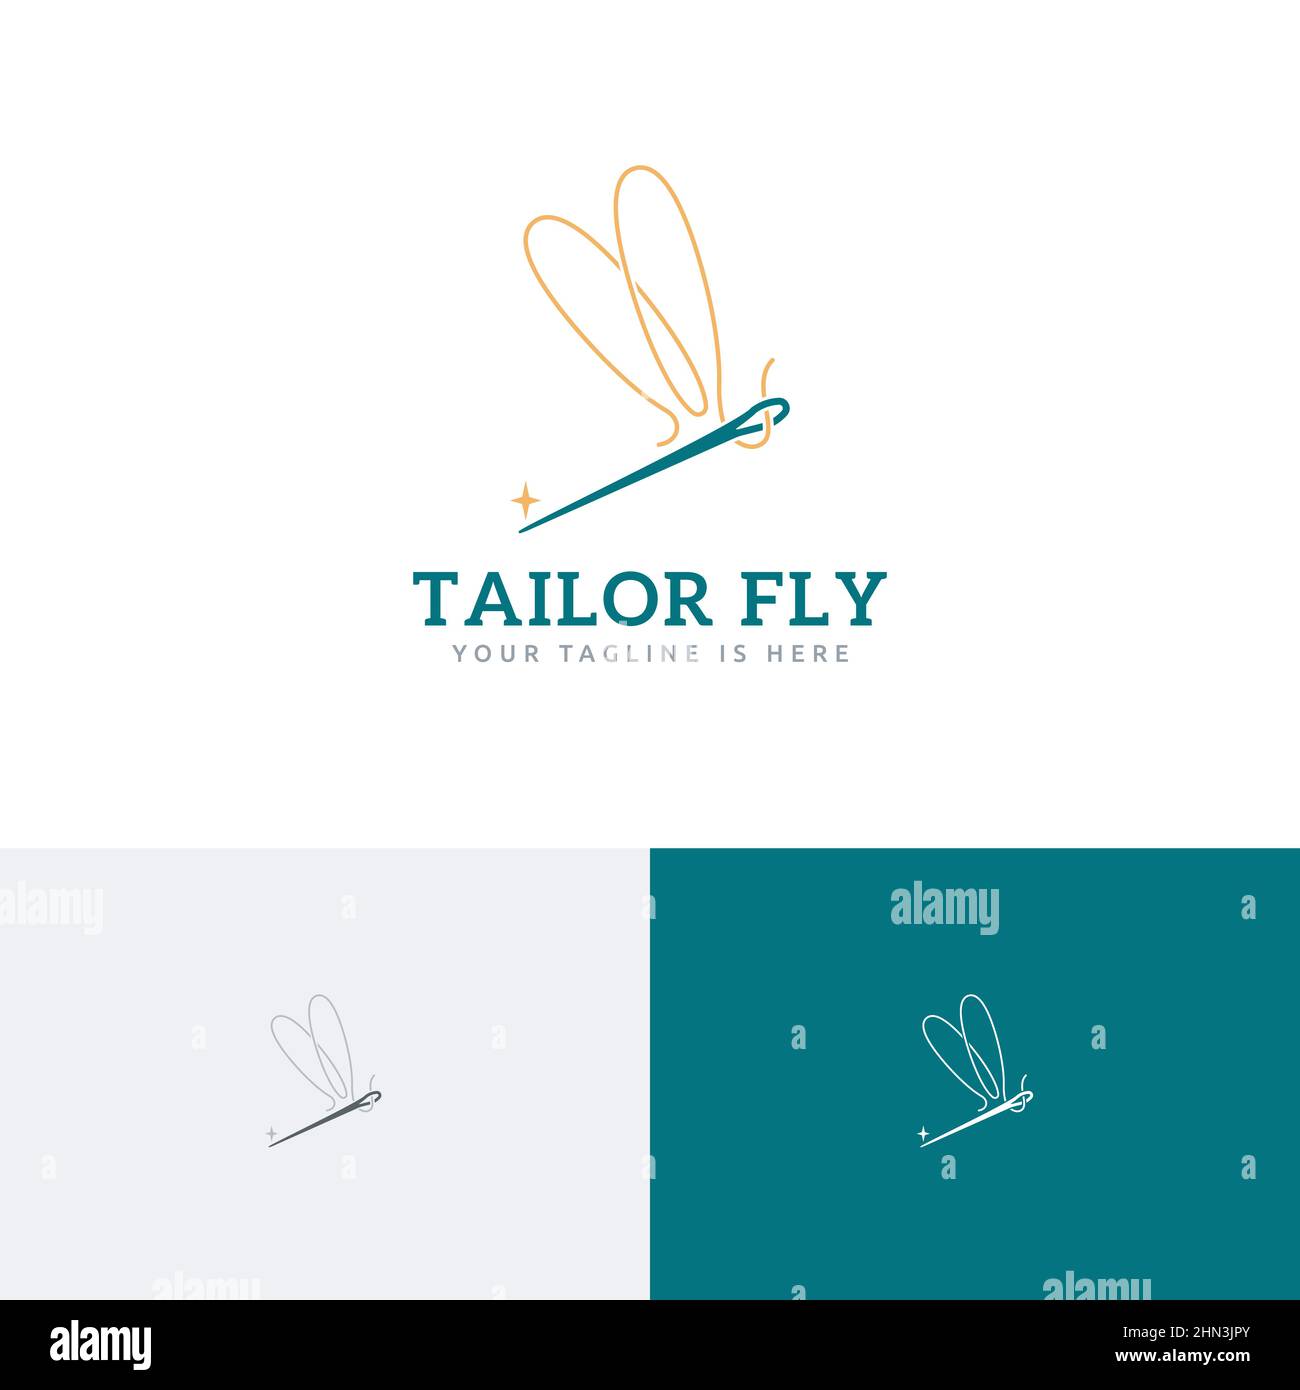 Belle élégante couture aiguilles Dragonfly Wings Fly logo idée Illustration de Vecteur